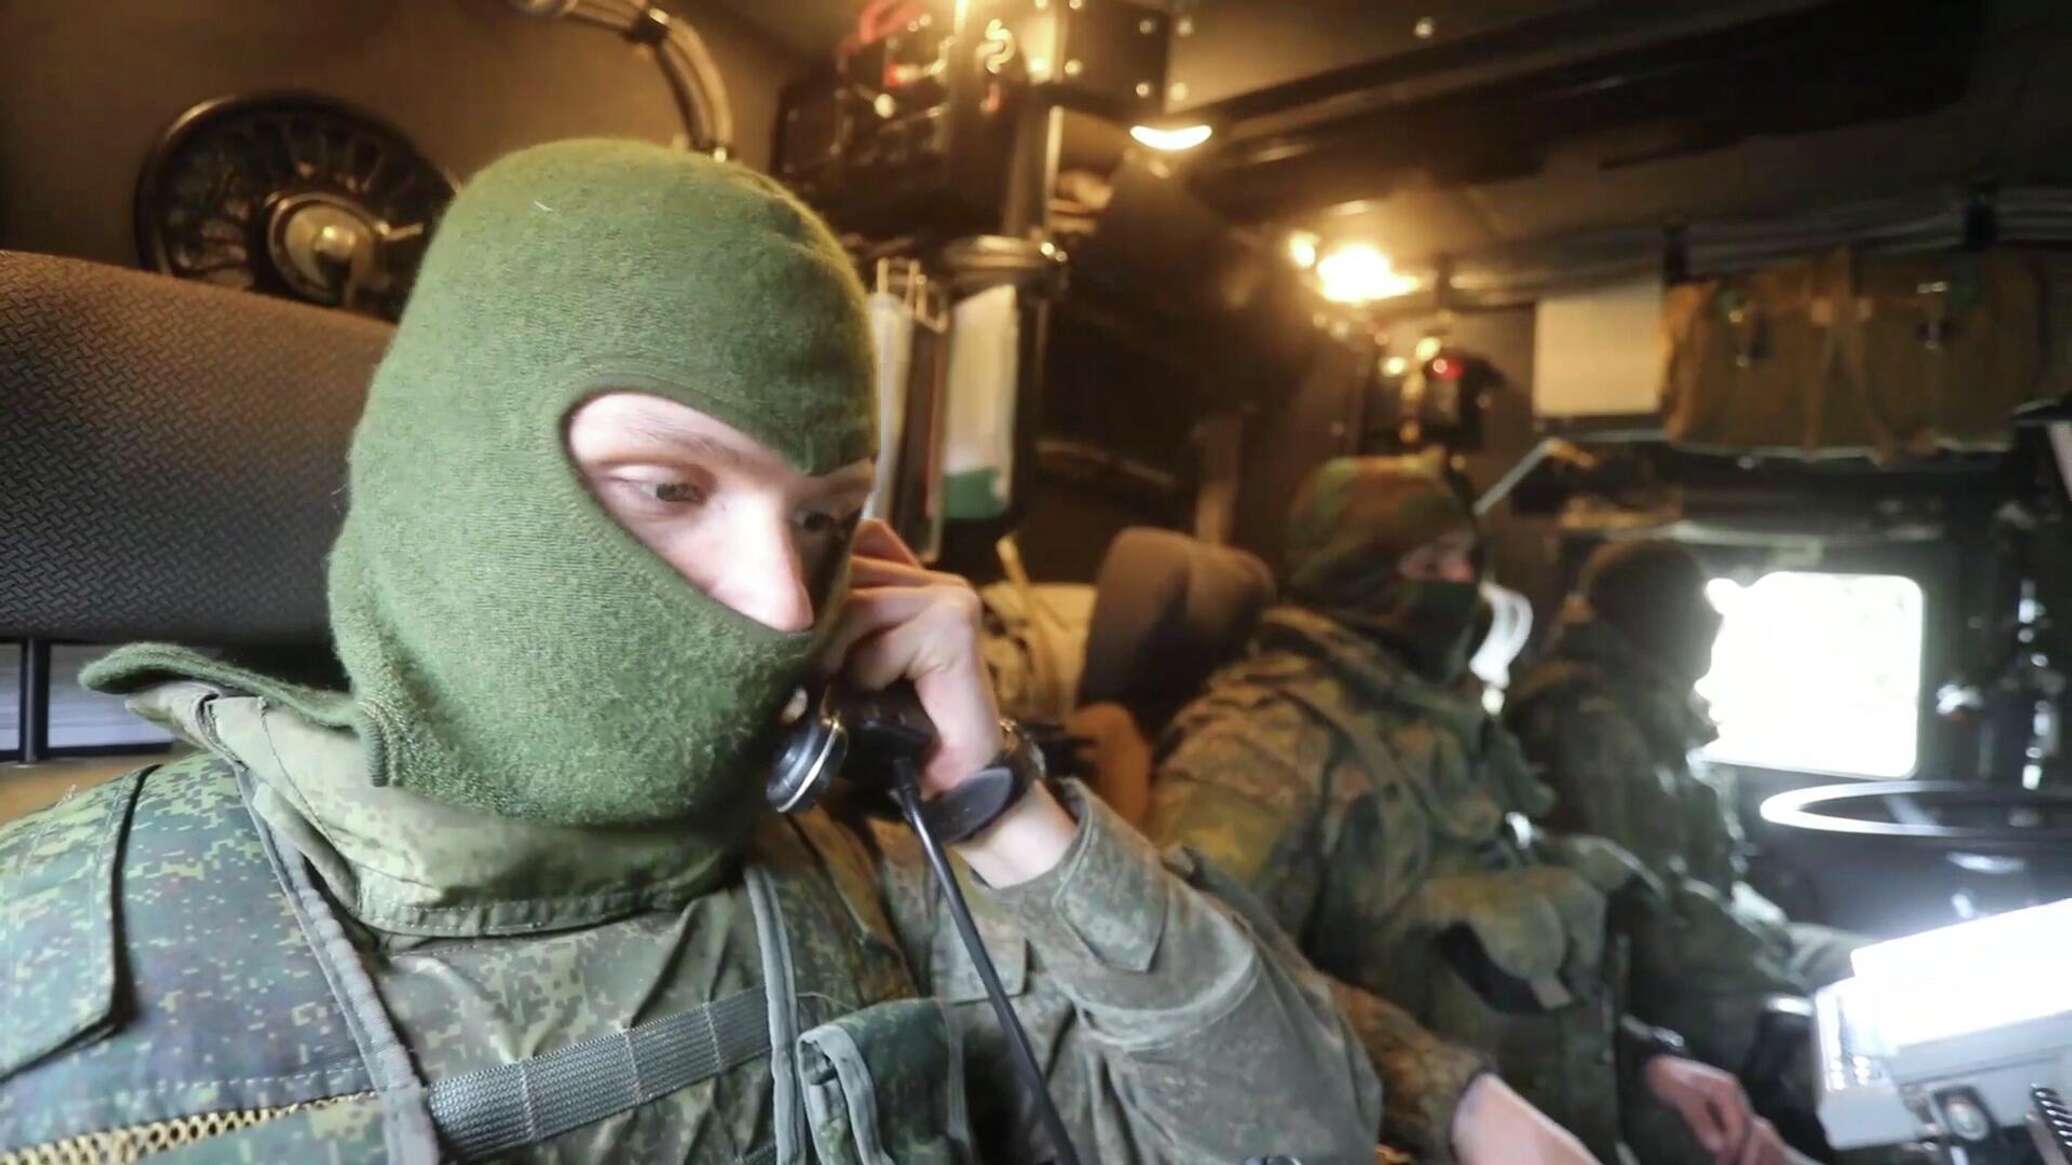 "إسكندر" الروسي يدمر موقعا أوكرانيا في مقاطعة خاركوف... فيديو